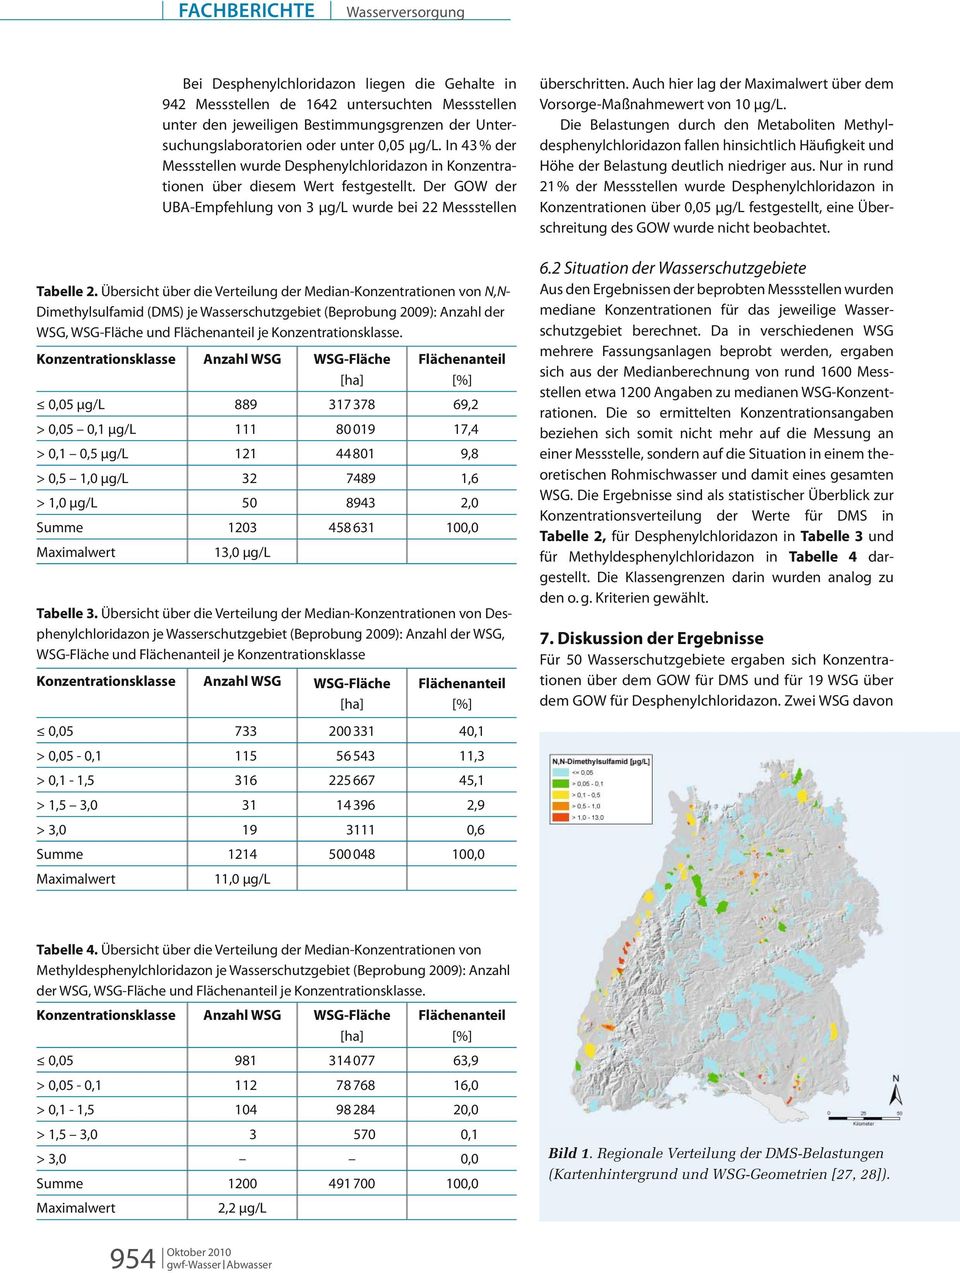 Übersicht über die Verteilung der Median-Konzentrationen von N,N- Dimethylsulfamid (DMS) je Wasserschutzgebiet (Beprobung 2009): Anzahl der WSG, WSG-Fläche und Flächenanteil je Konzentrationsklasse.